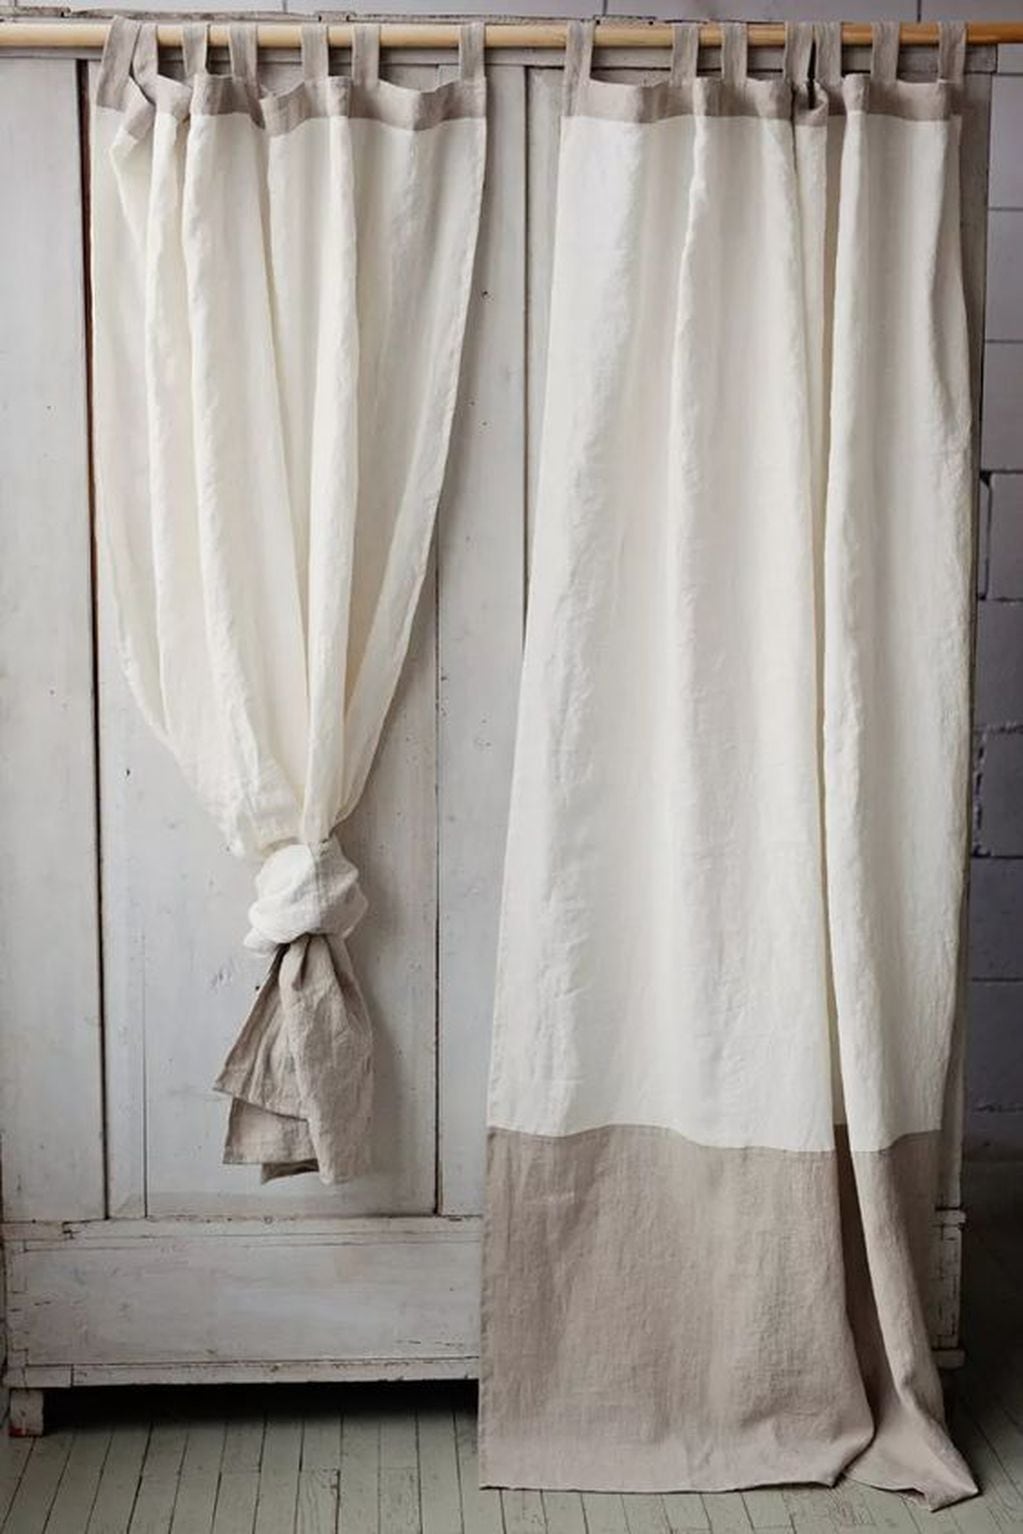 El tusor es una tela muy utilizada y versátil para confeccionar cortinas, que vistan el ambiente.